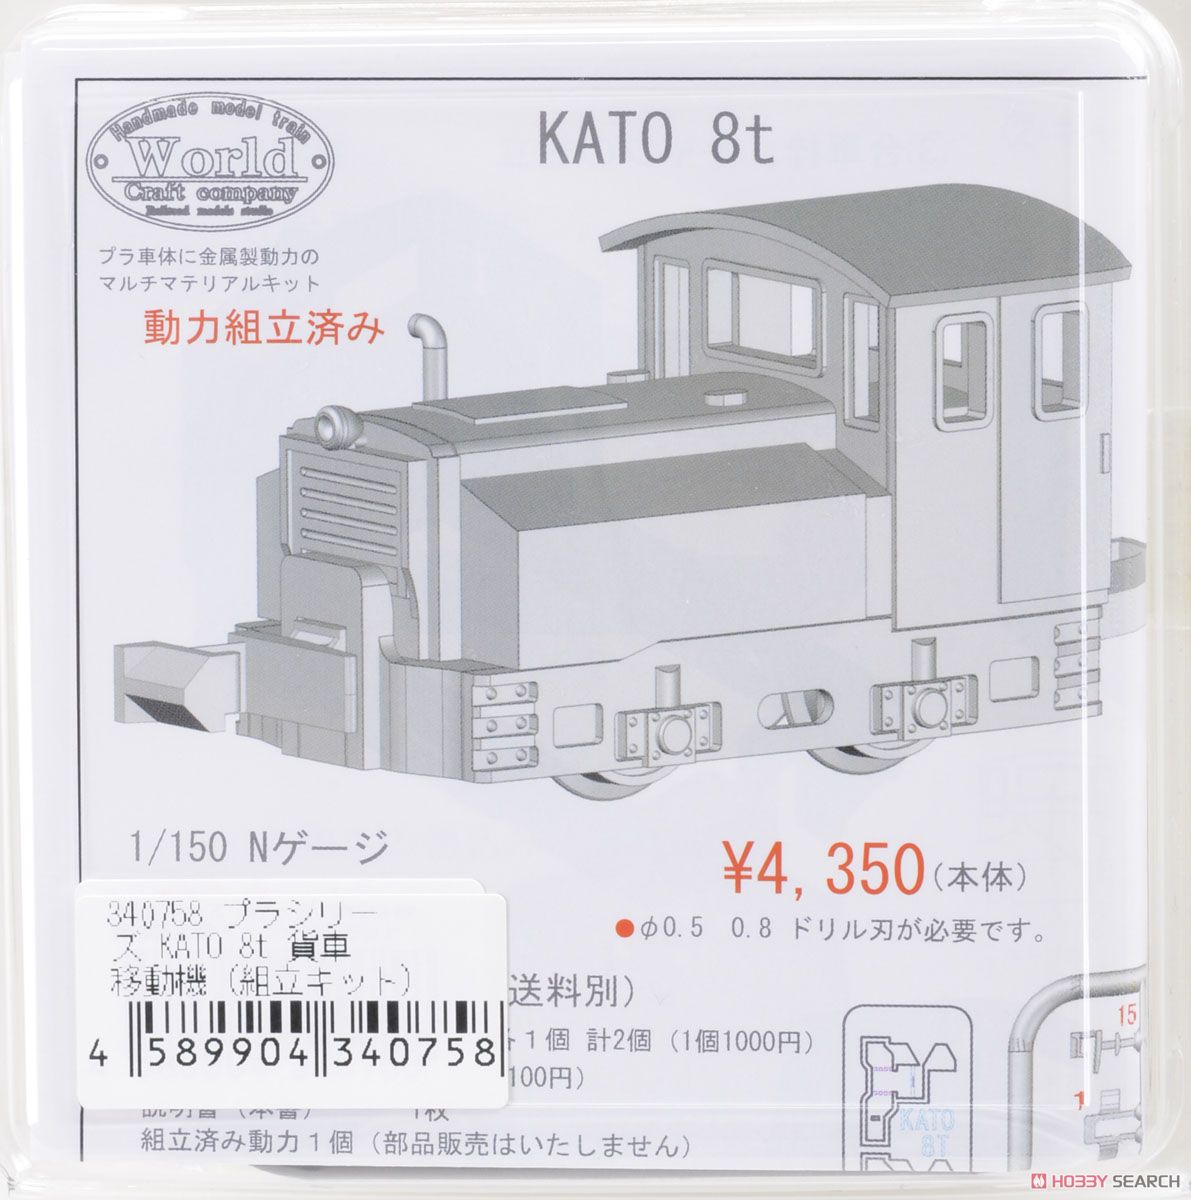 プラシリーズ KATO 8t 貨車移動機 (組立キット) (鉄道模型) パッケージ1